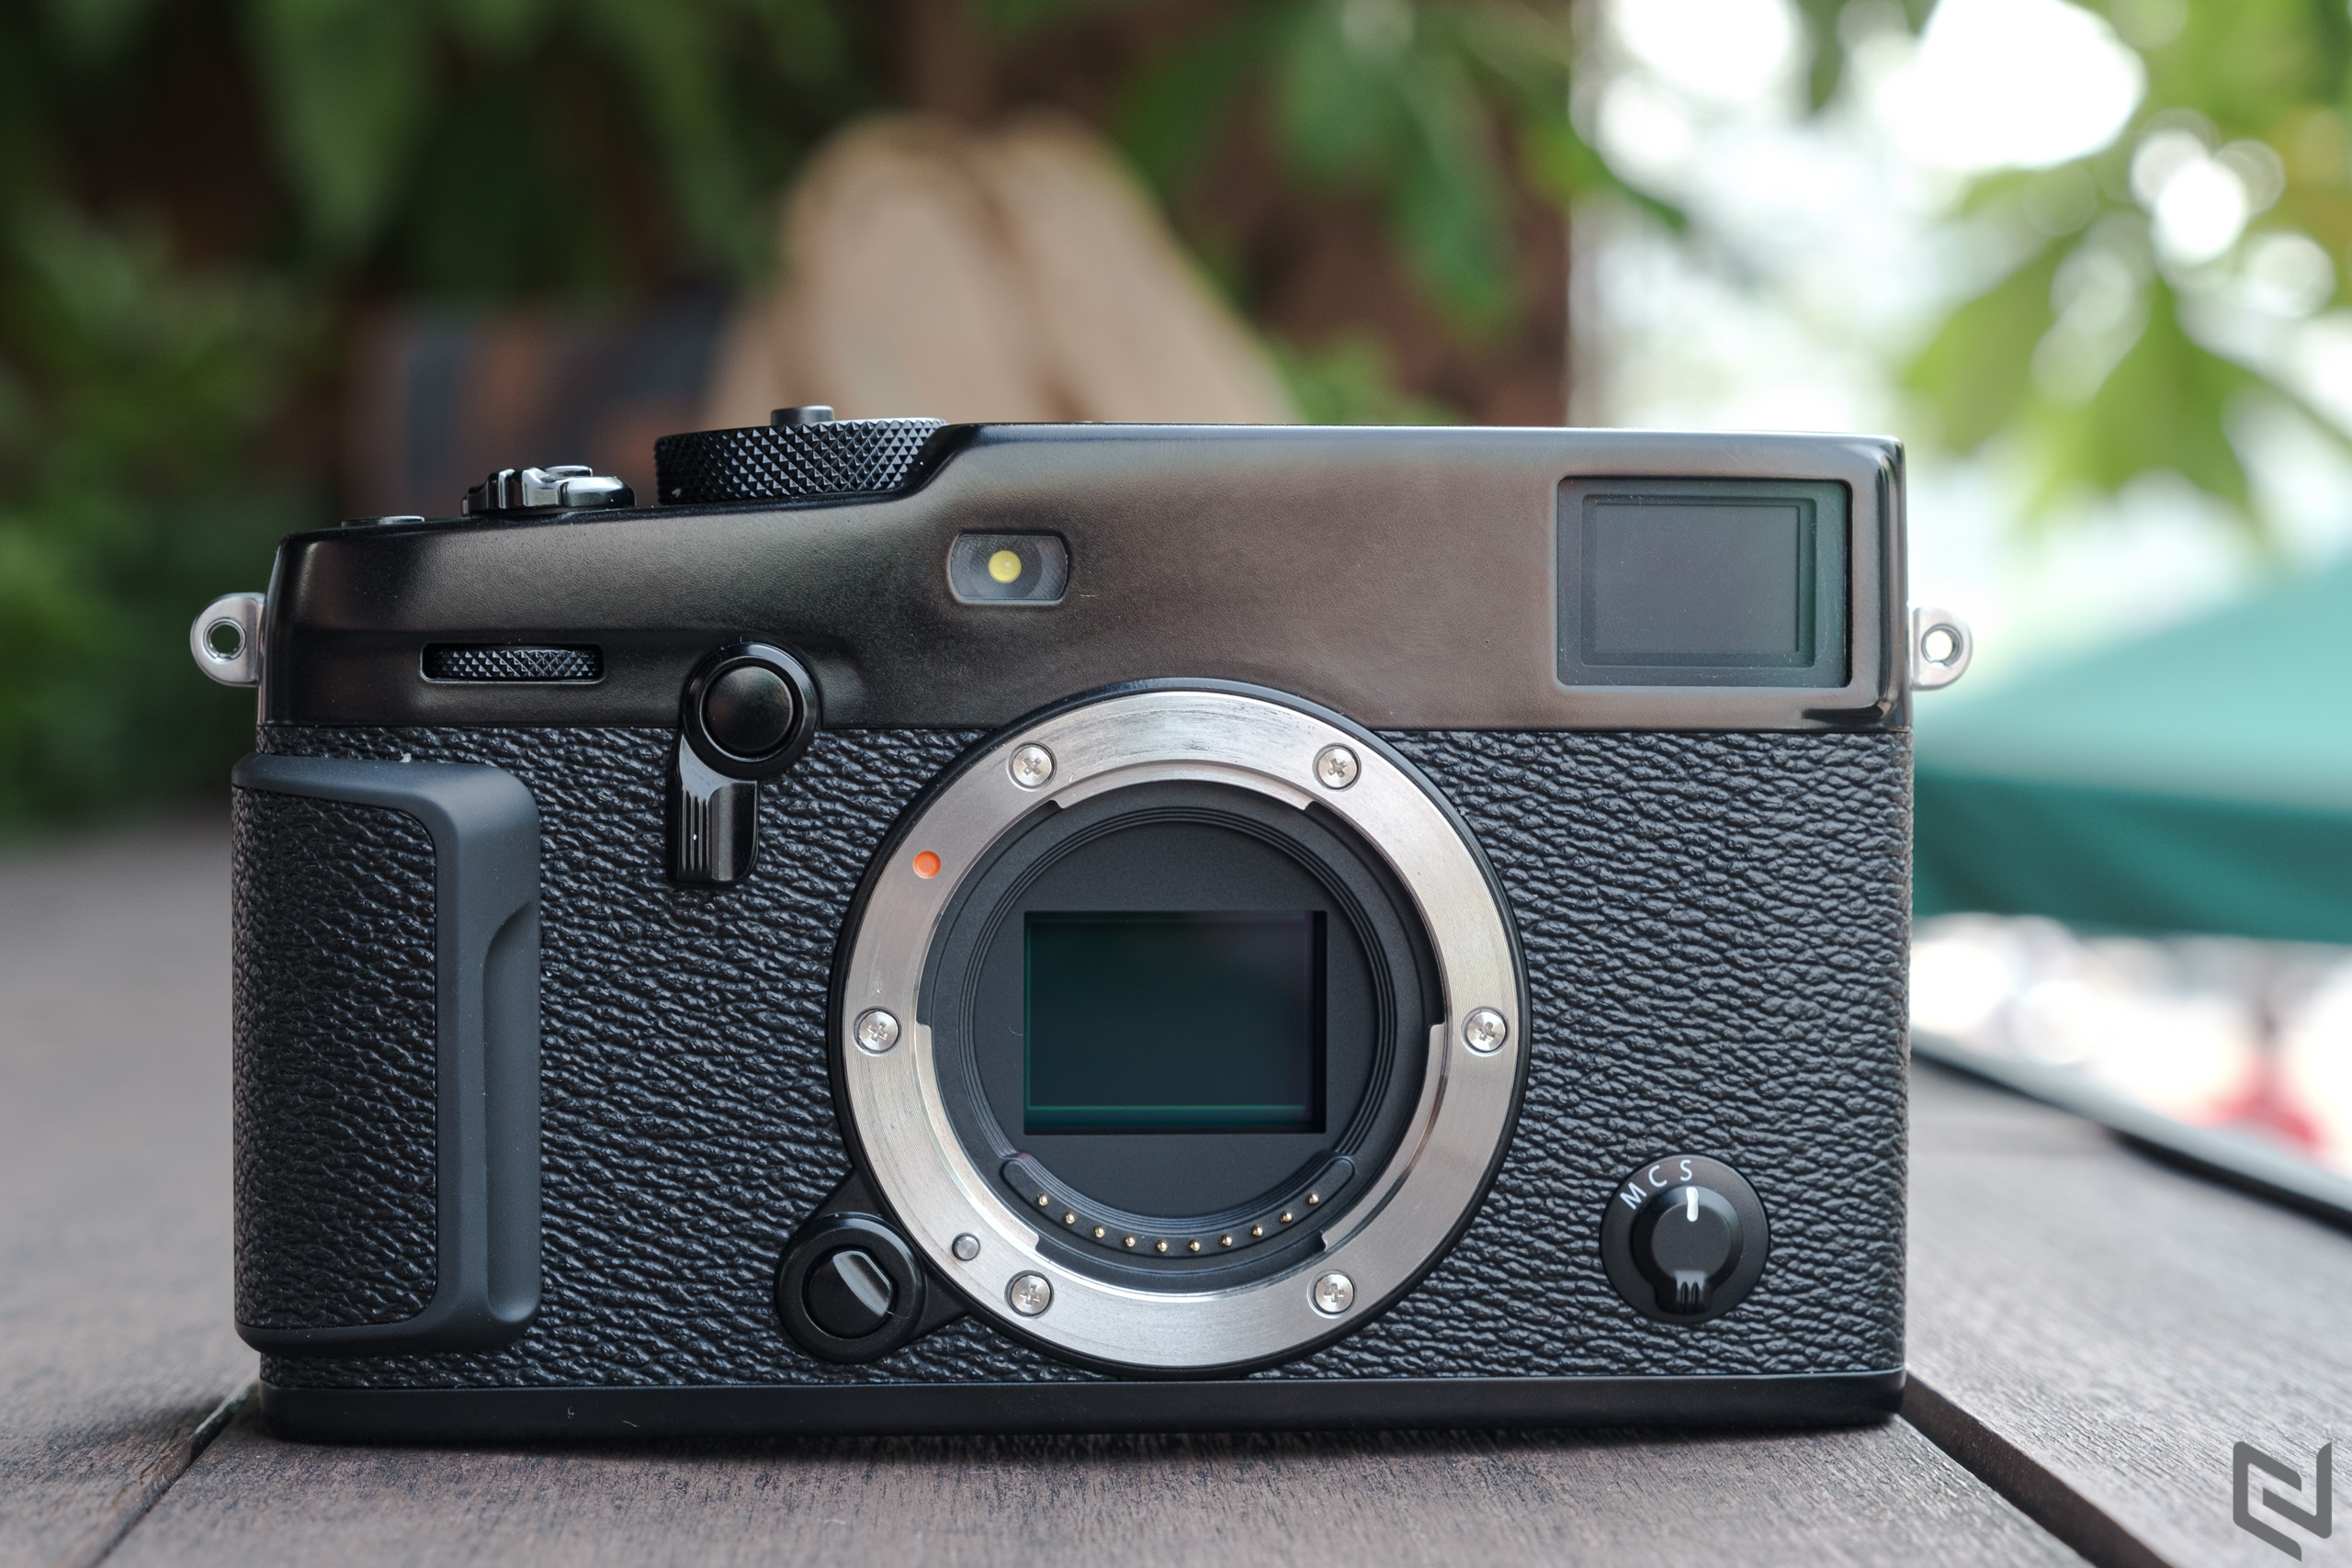 Trải nghiệm Fujiilm X-Pro3: Nếu muốn khác biệt, đây chính là chiếc máy ảnh dành cho bạn